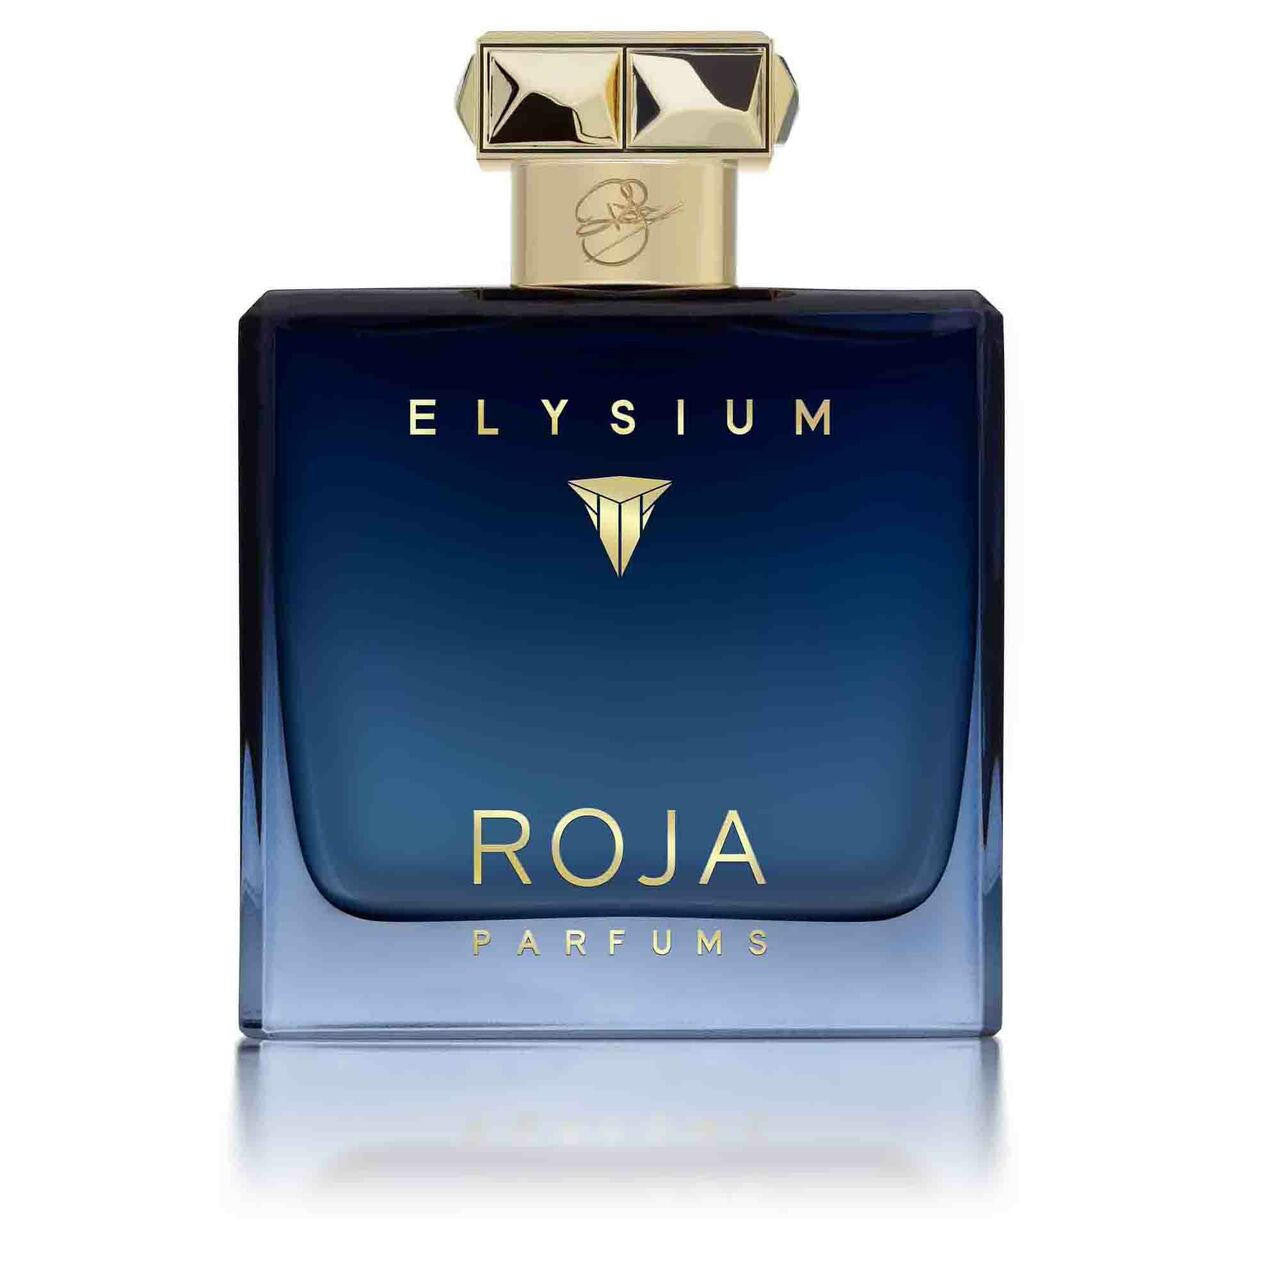 Shop Roja Pour Homme Elysium PARFUM Cologne | ZGO Perfumery